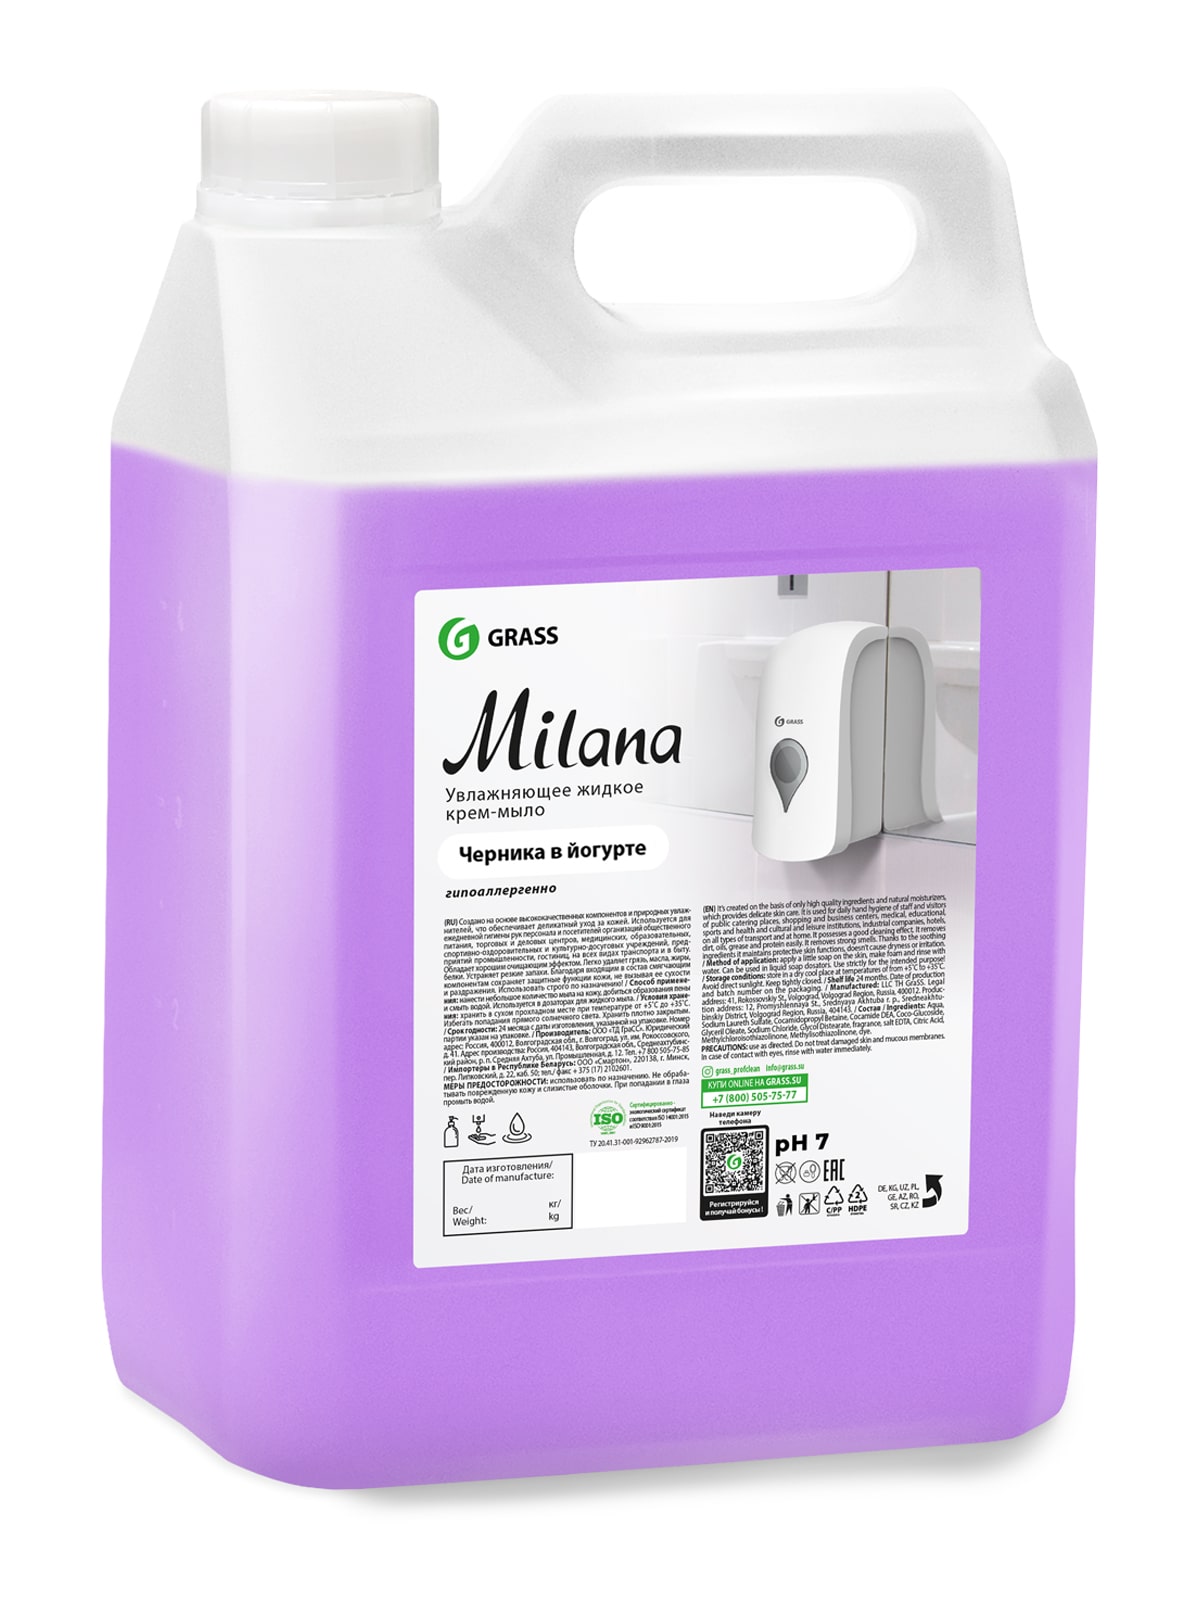 Купить Жидкое мыло для мытья рук Milana Черника гипоаллергенное густое пенное 5 л, Grass